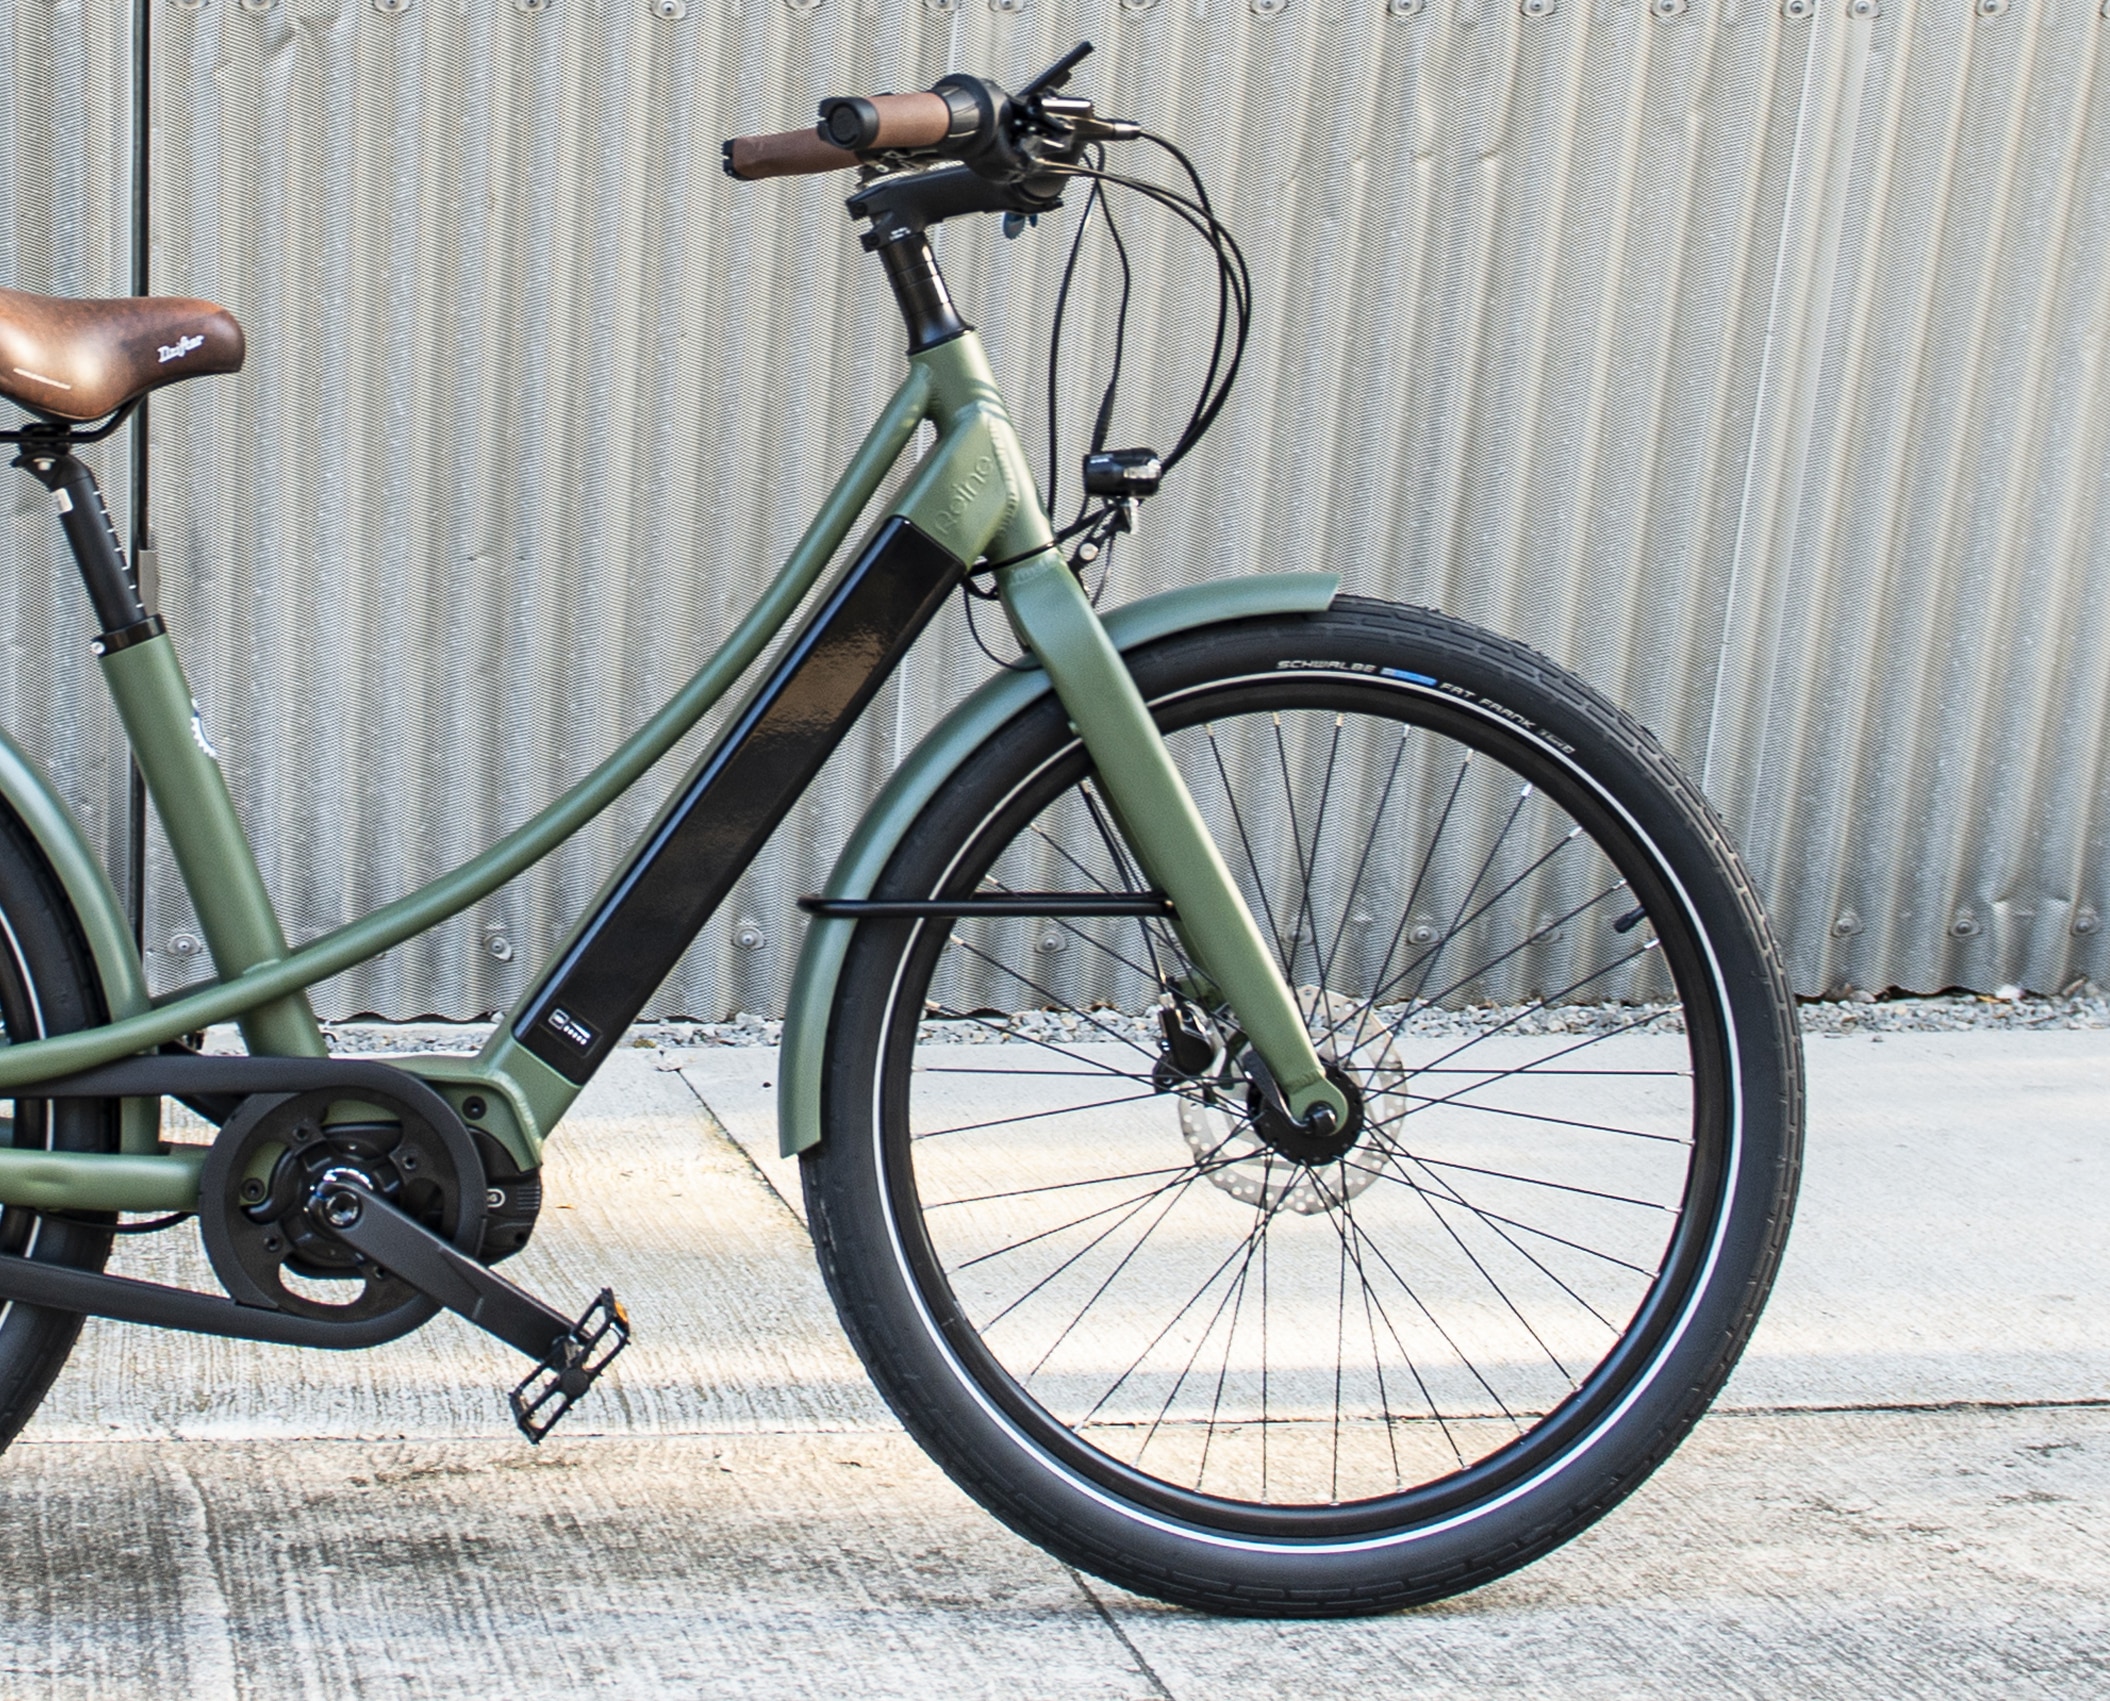 design avant du vélo électrique coloris Kaki en version cadre bas Reinebike Made in france